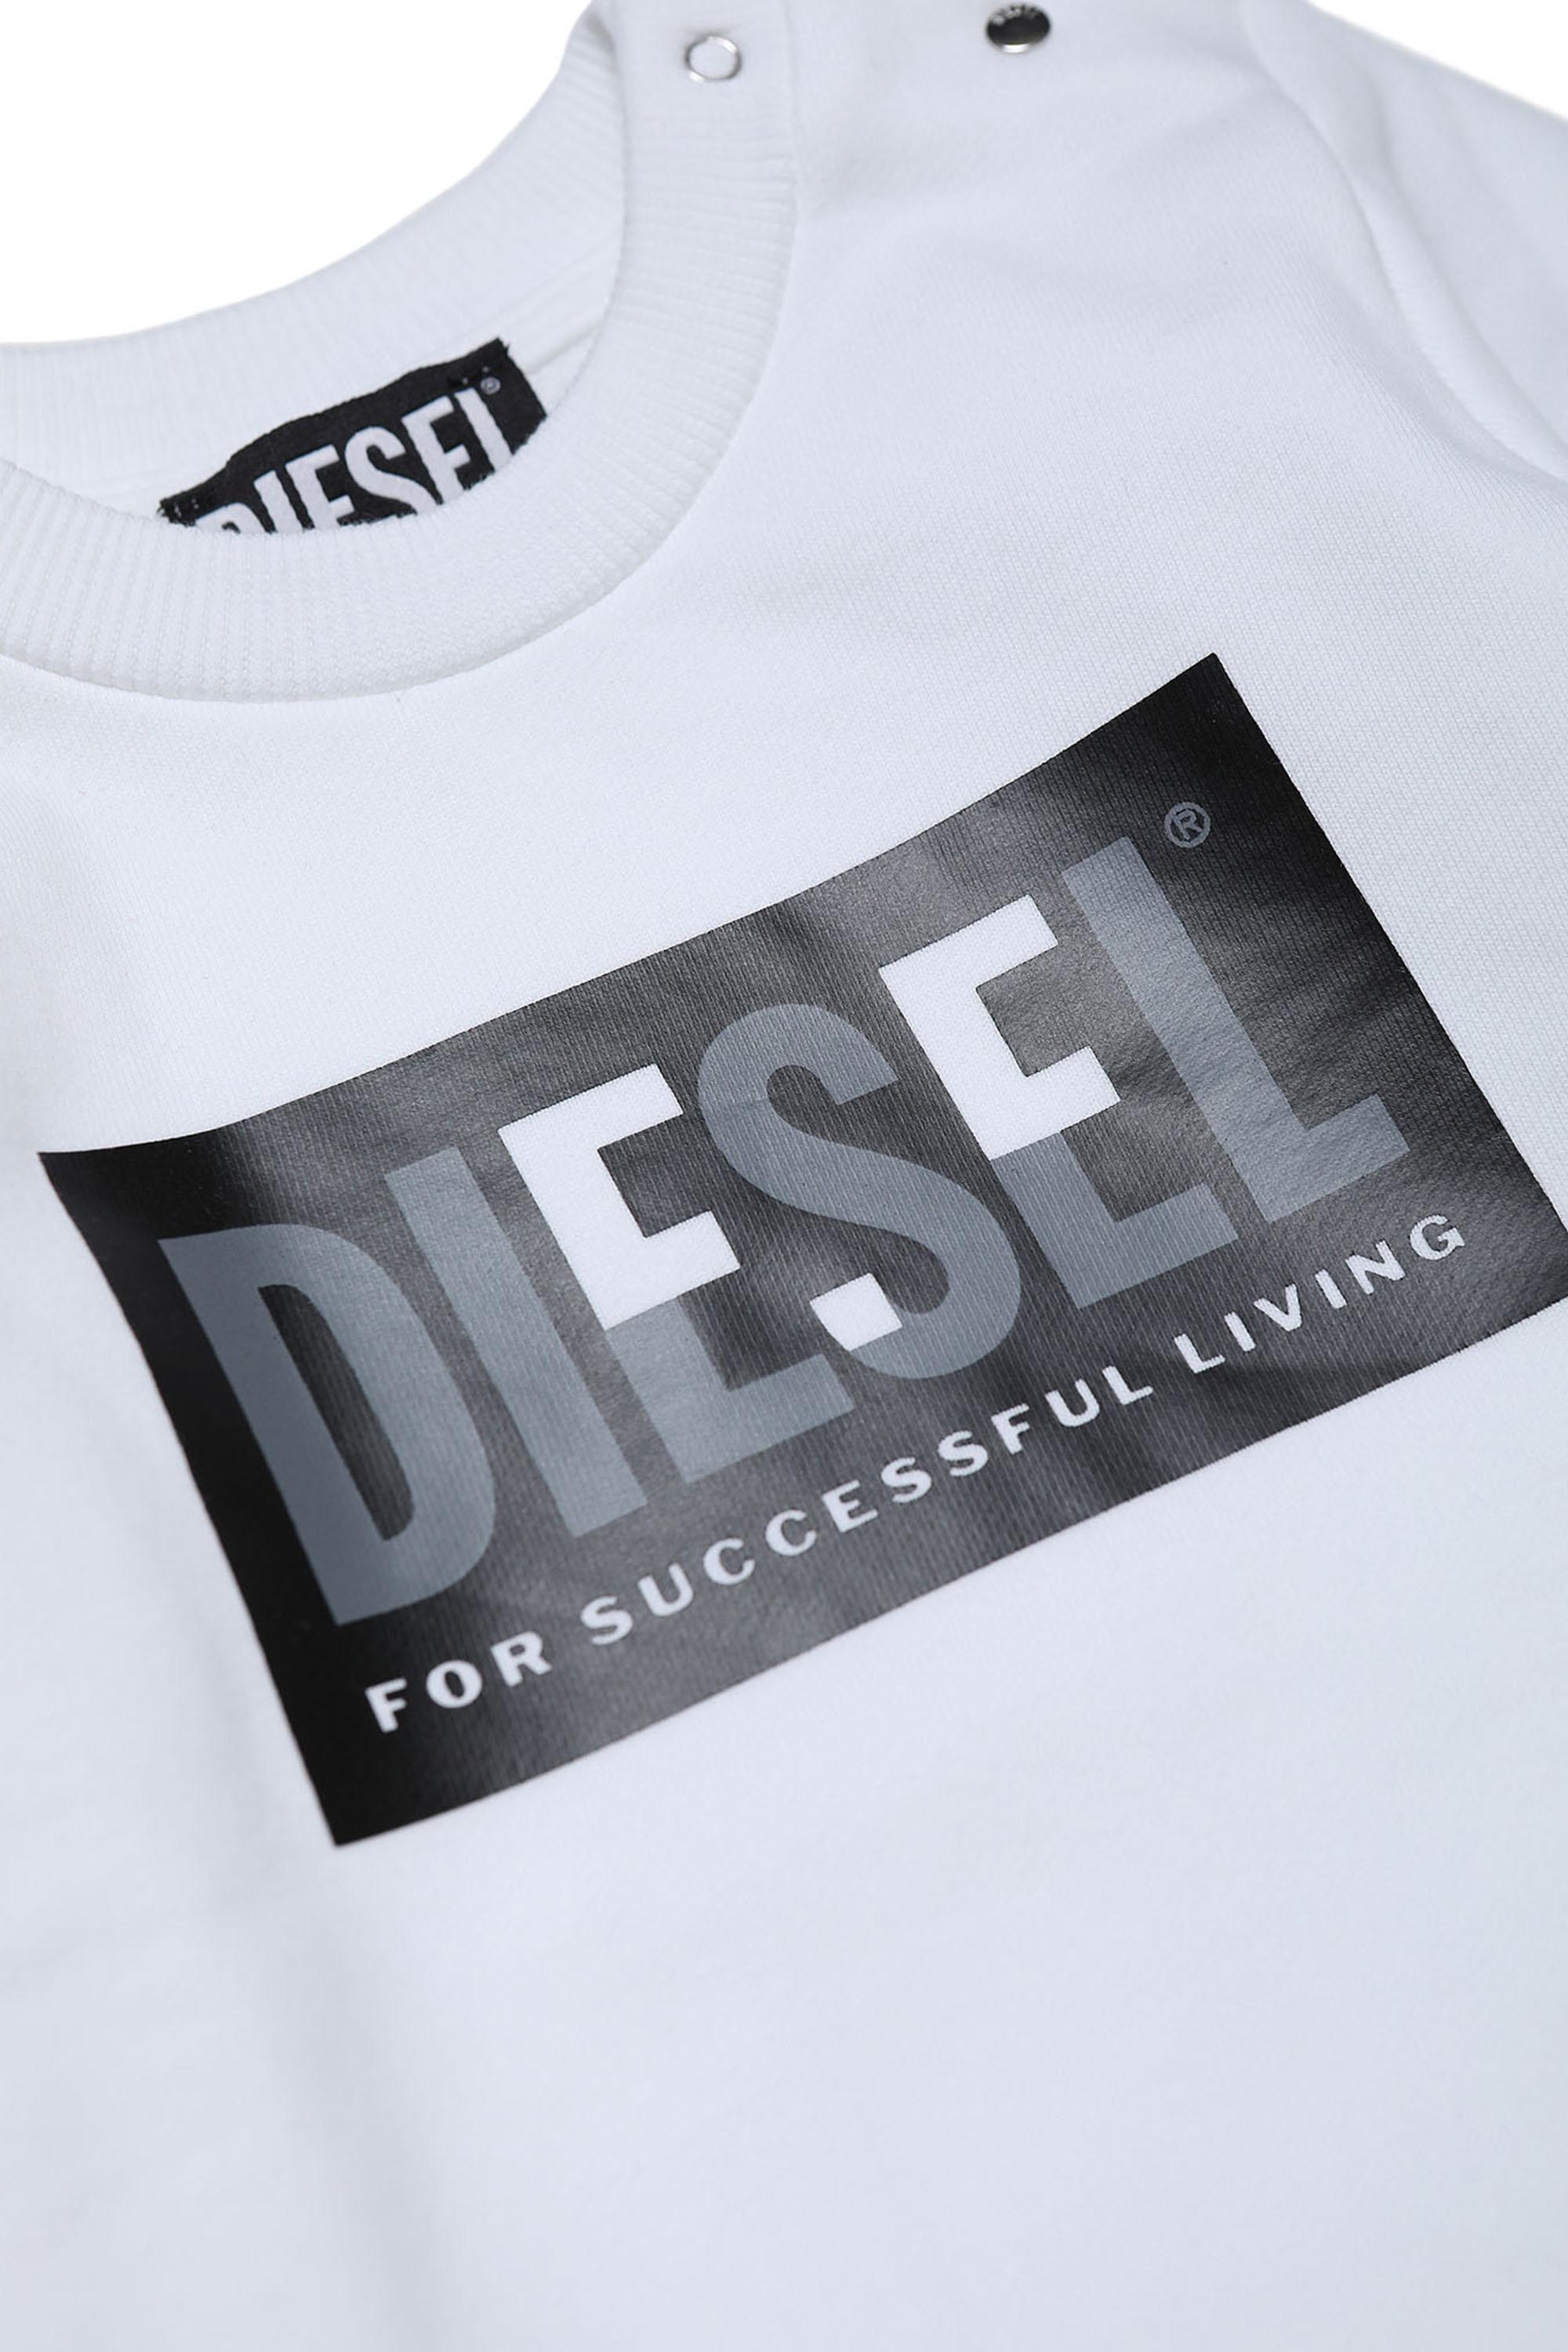 Diesel - SCREWMILEYB, White - Image 3